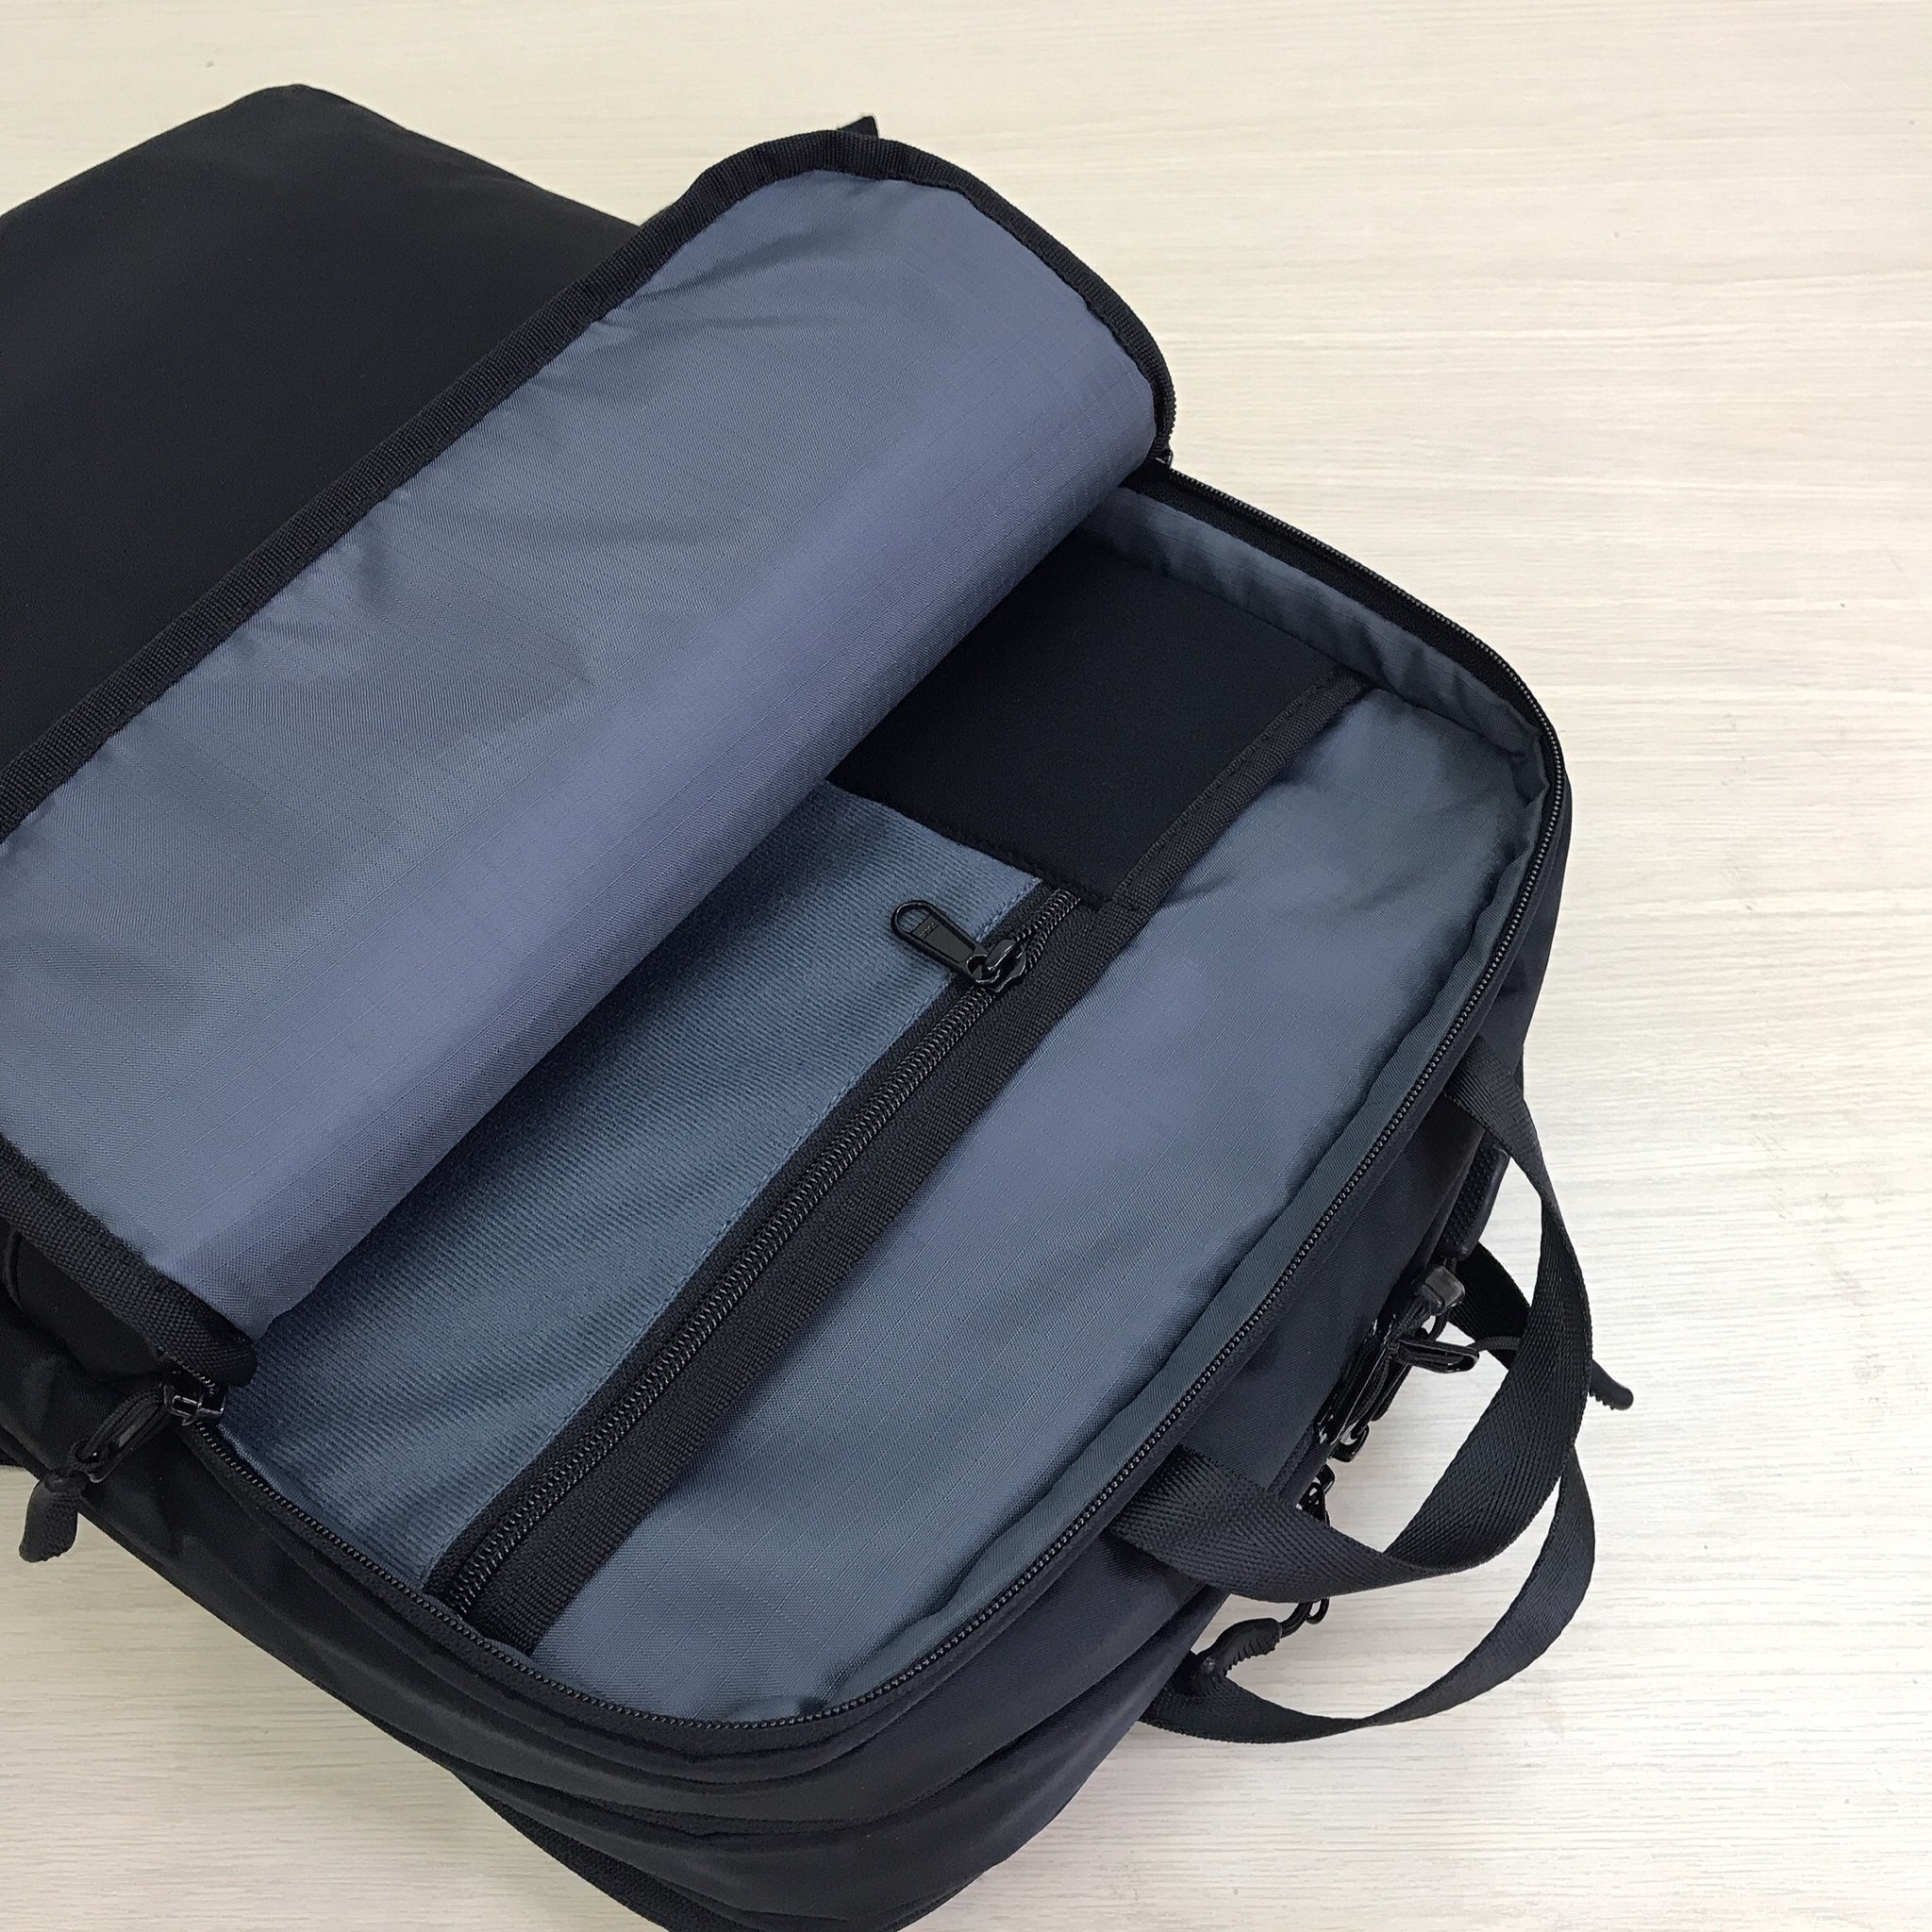 Balo laptop cao cấp TuxBal trượt nước - model Refined BR201-15 inch